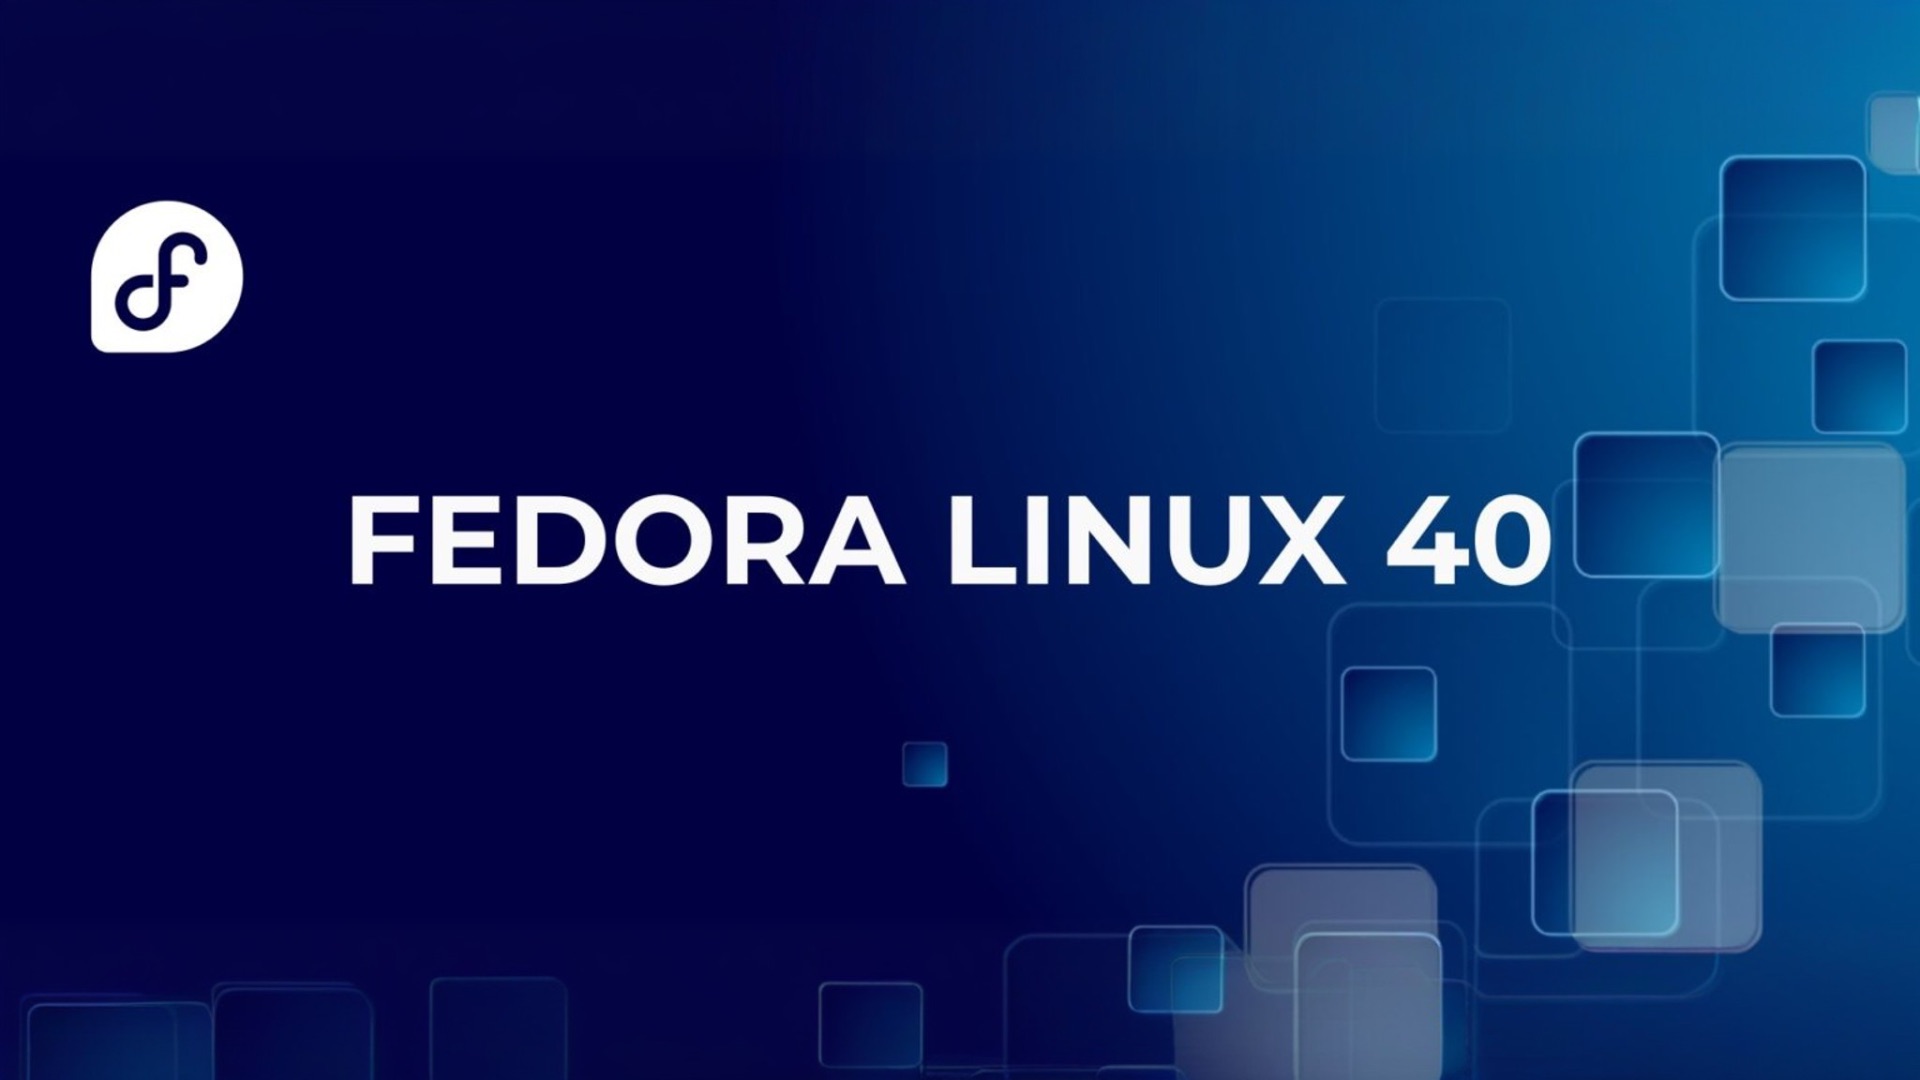 Вышла Fedora 40: ваш Linux станет еще быстрее, удобнее и красивее с GNOME 46